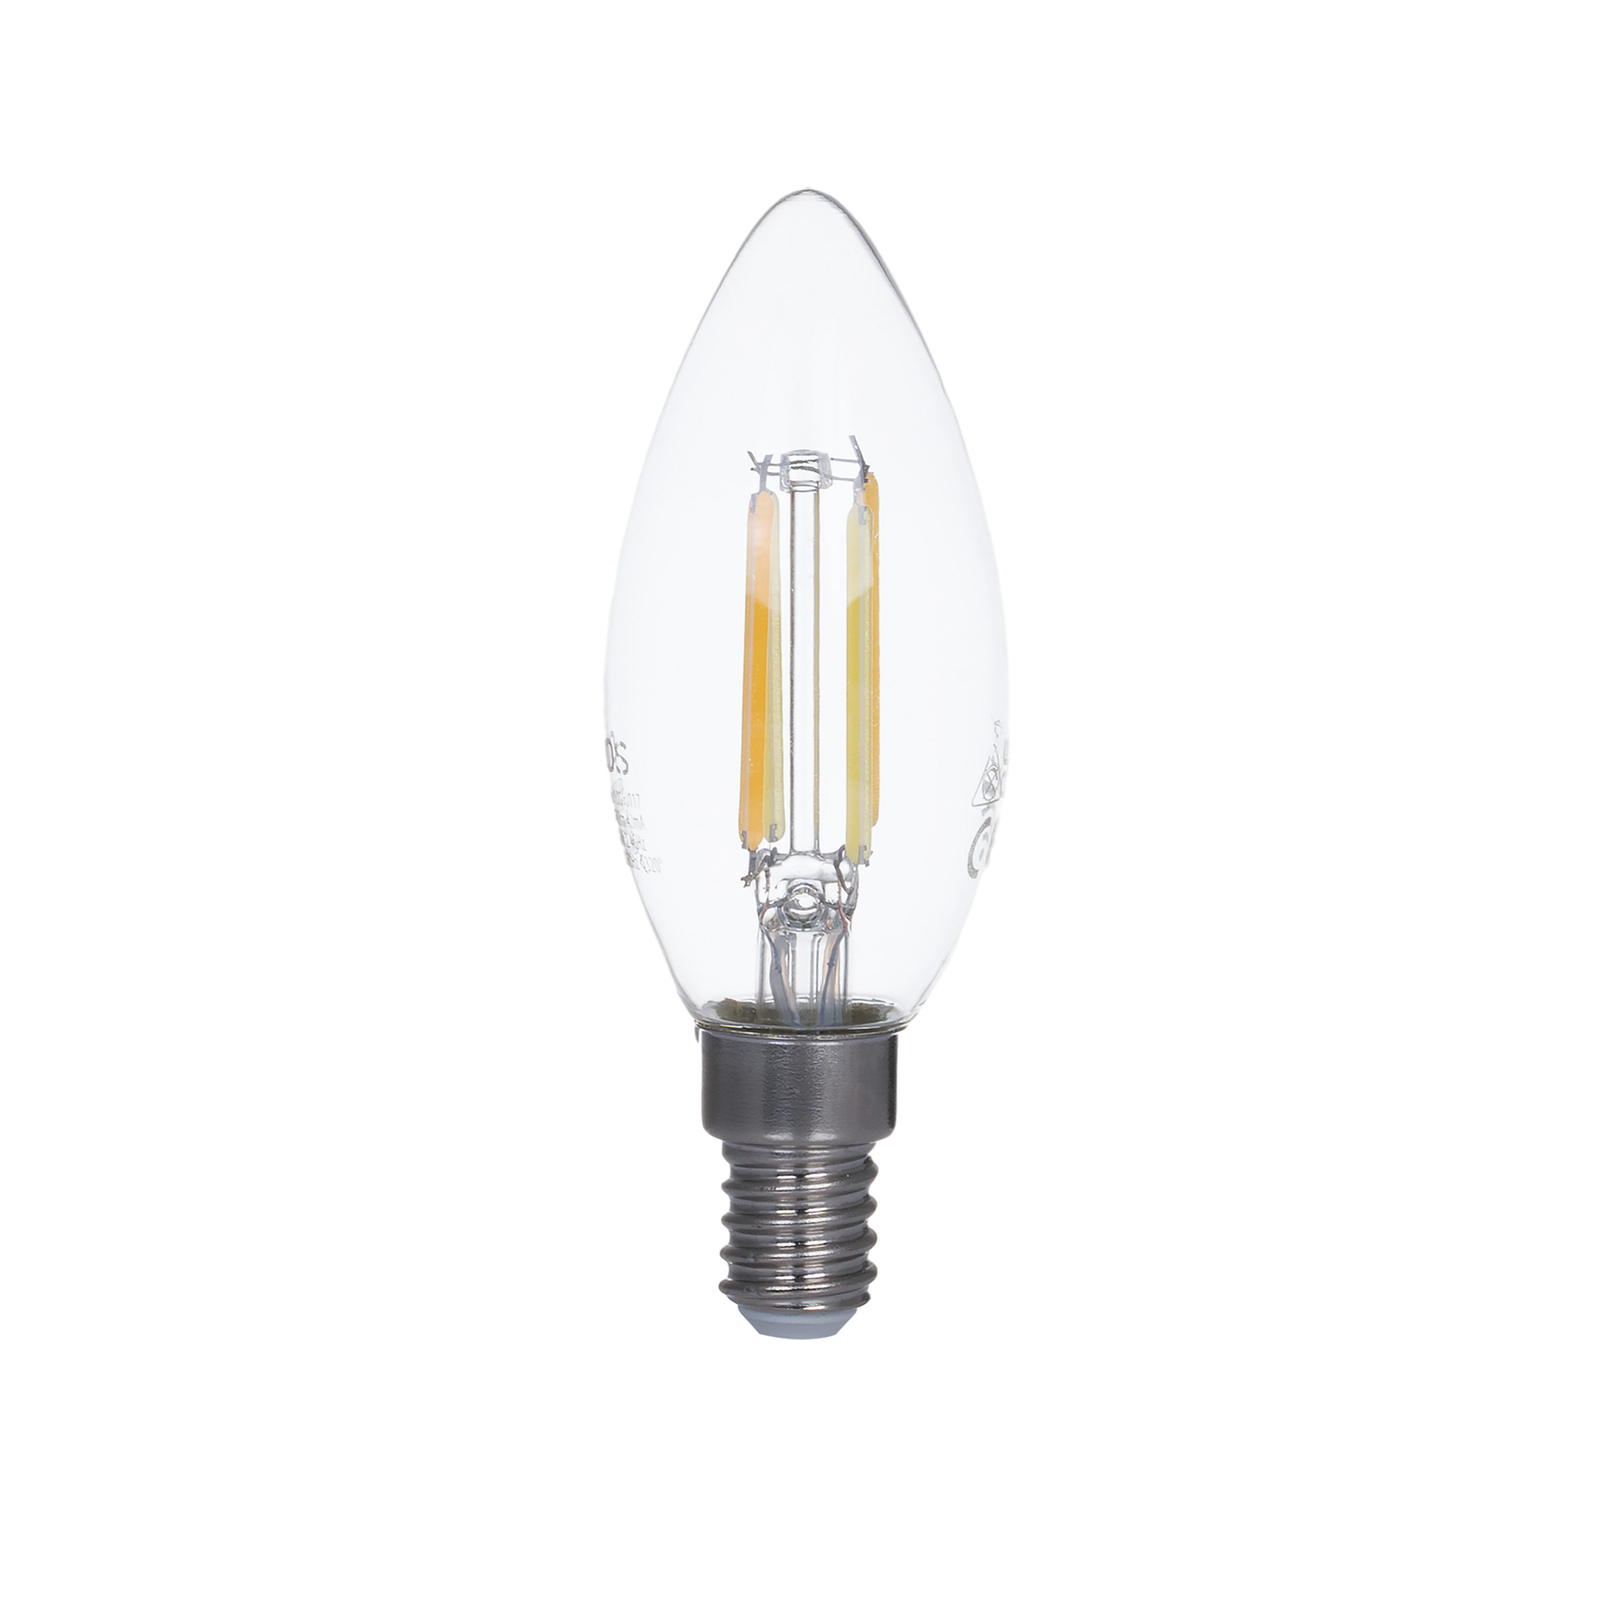 Smart bougie LED E14 4,2W WLAN clair tunable white